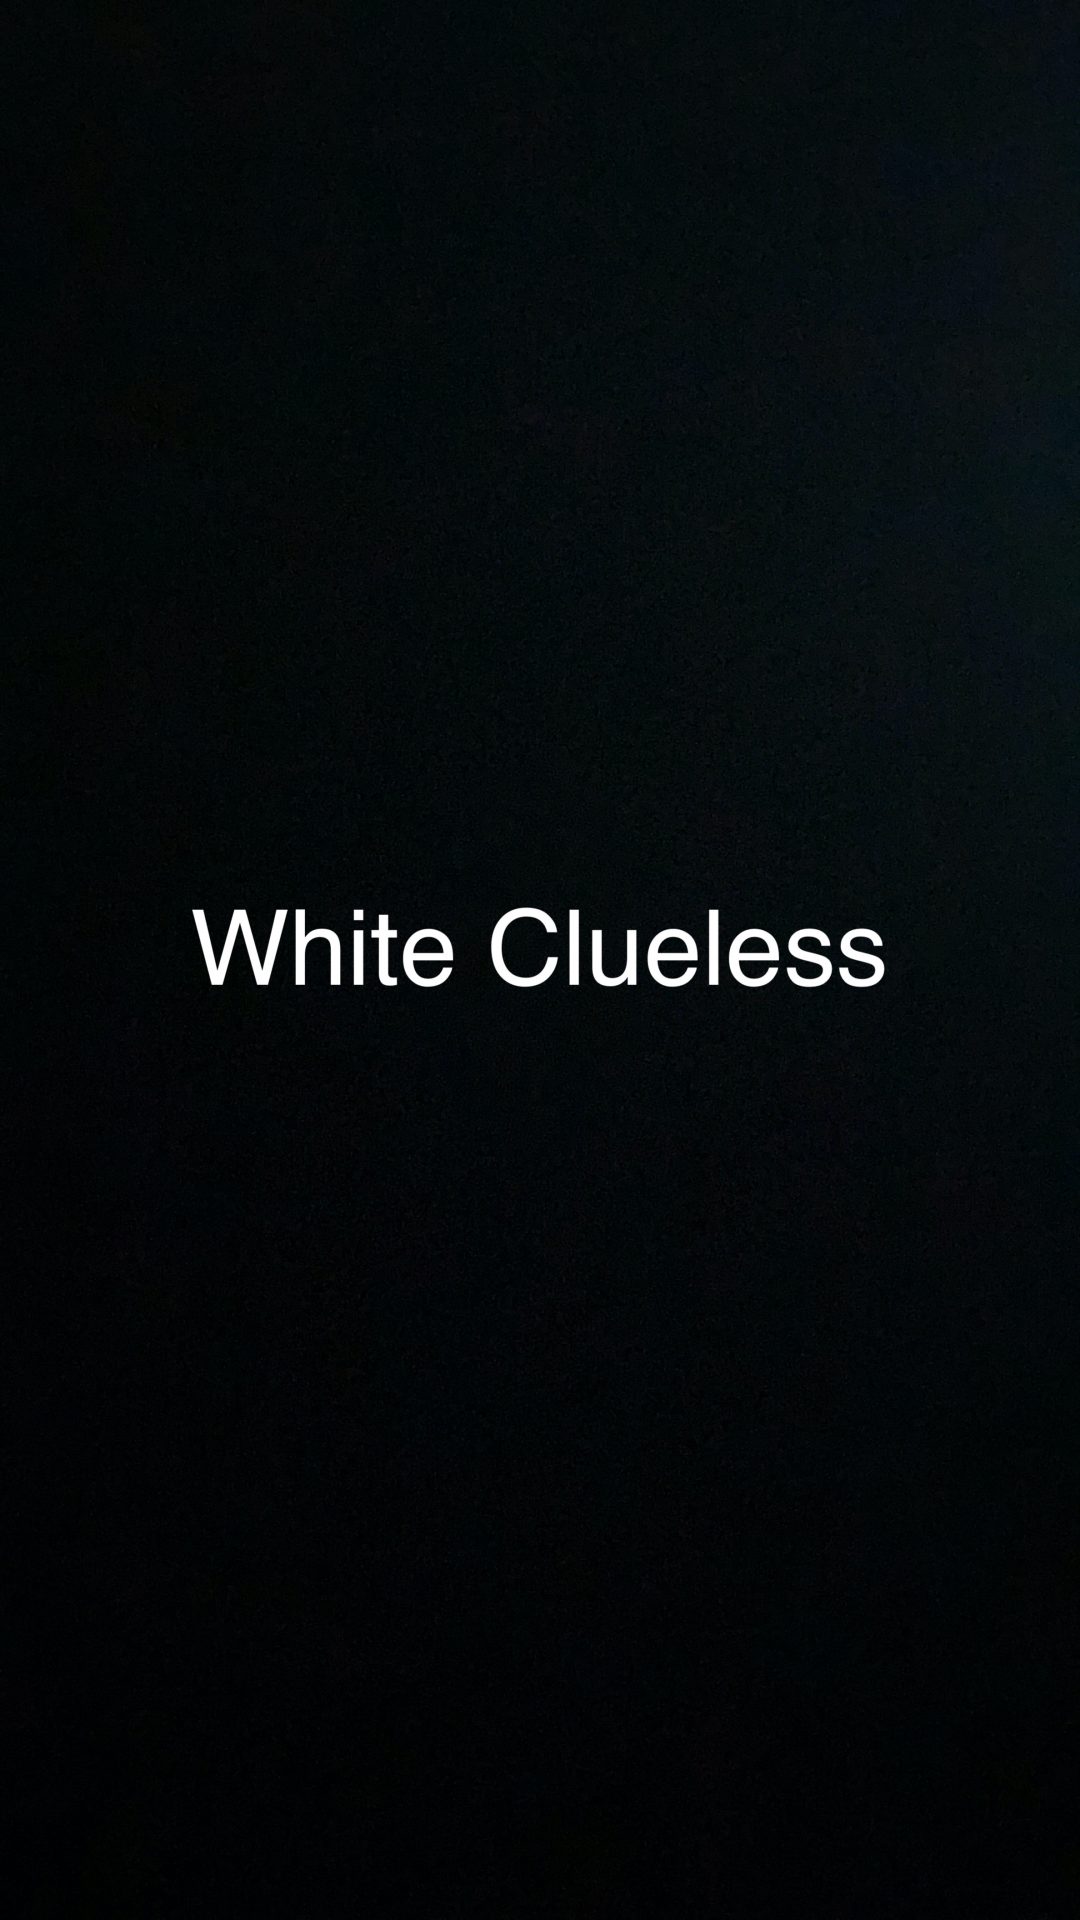 White Clueless